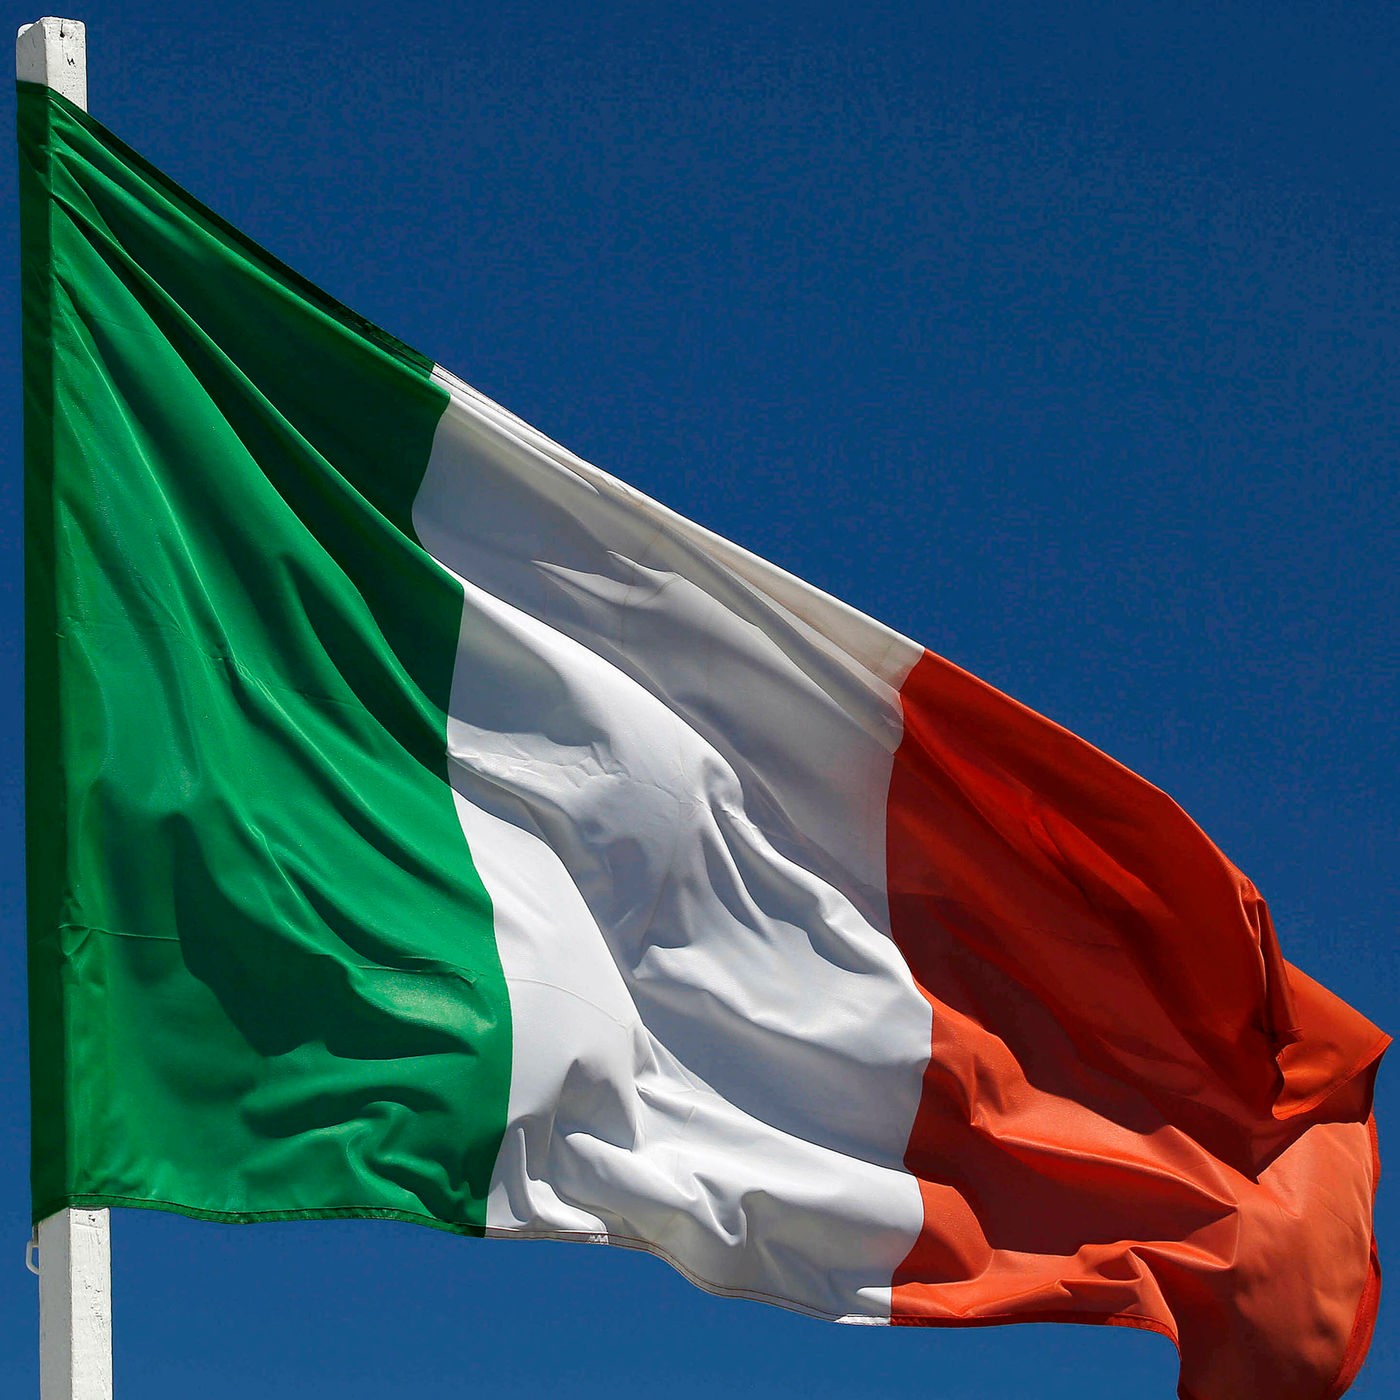 Länderfahne Italien